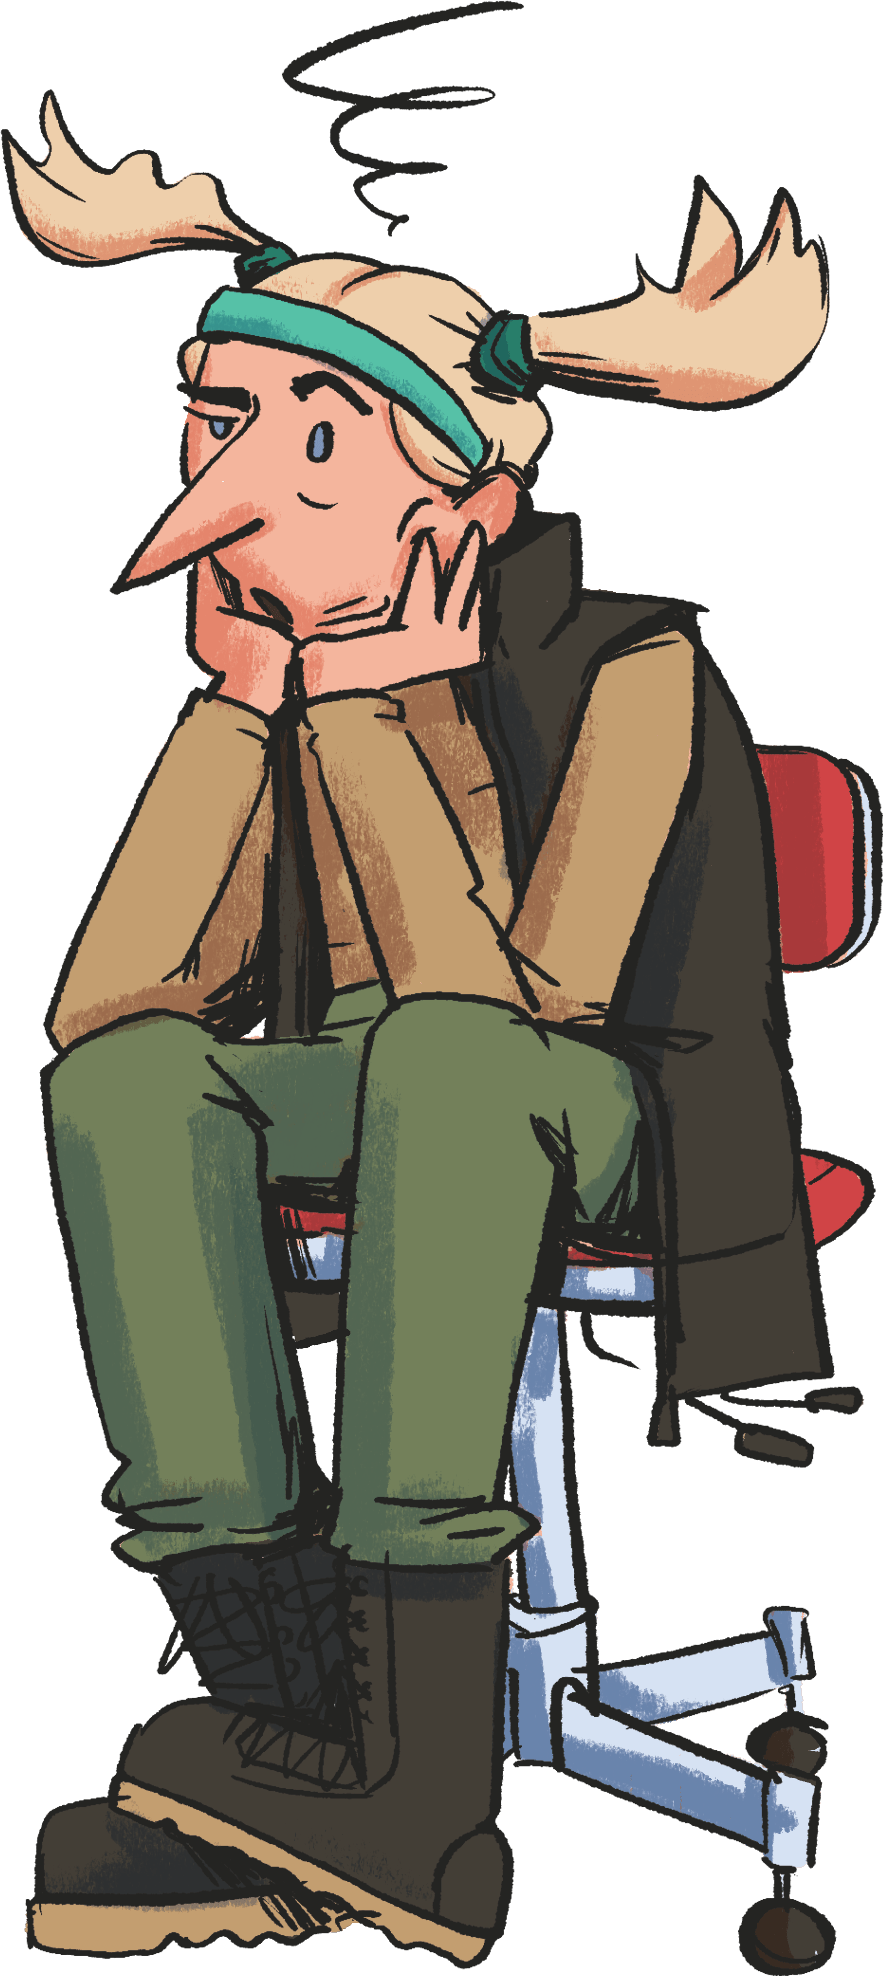 Illustrationen portrætterer Kikki, en karismatisk figur med et reflekterende udtryk, siddende på en kontorstol med hovedet hvilende i hænderne. Hendes pandebånd flagrer til siden, hvilket tilføjer et element af bevægelse til billedet. Iført en stilfuld jakke og støvler, fremstår Kikki som eftertænksom, klar til at svare på spørgsmål om brugen af Let's Go Heroes-missionen. 